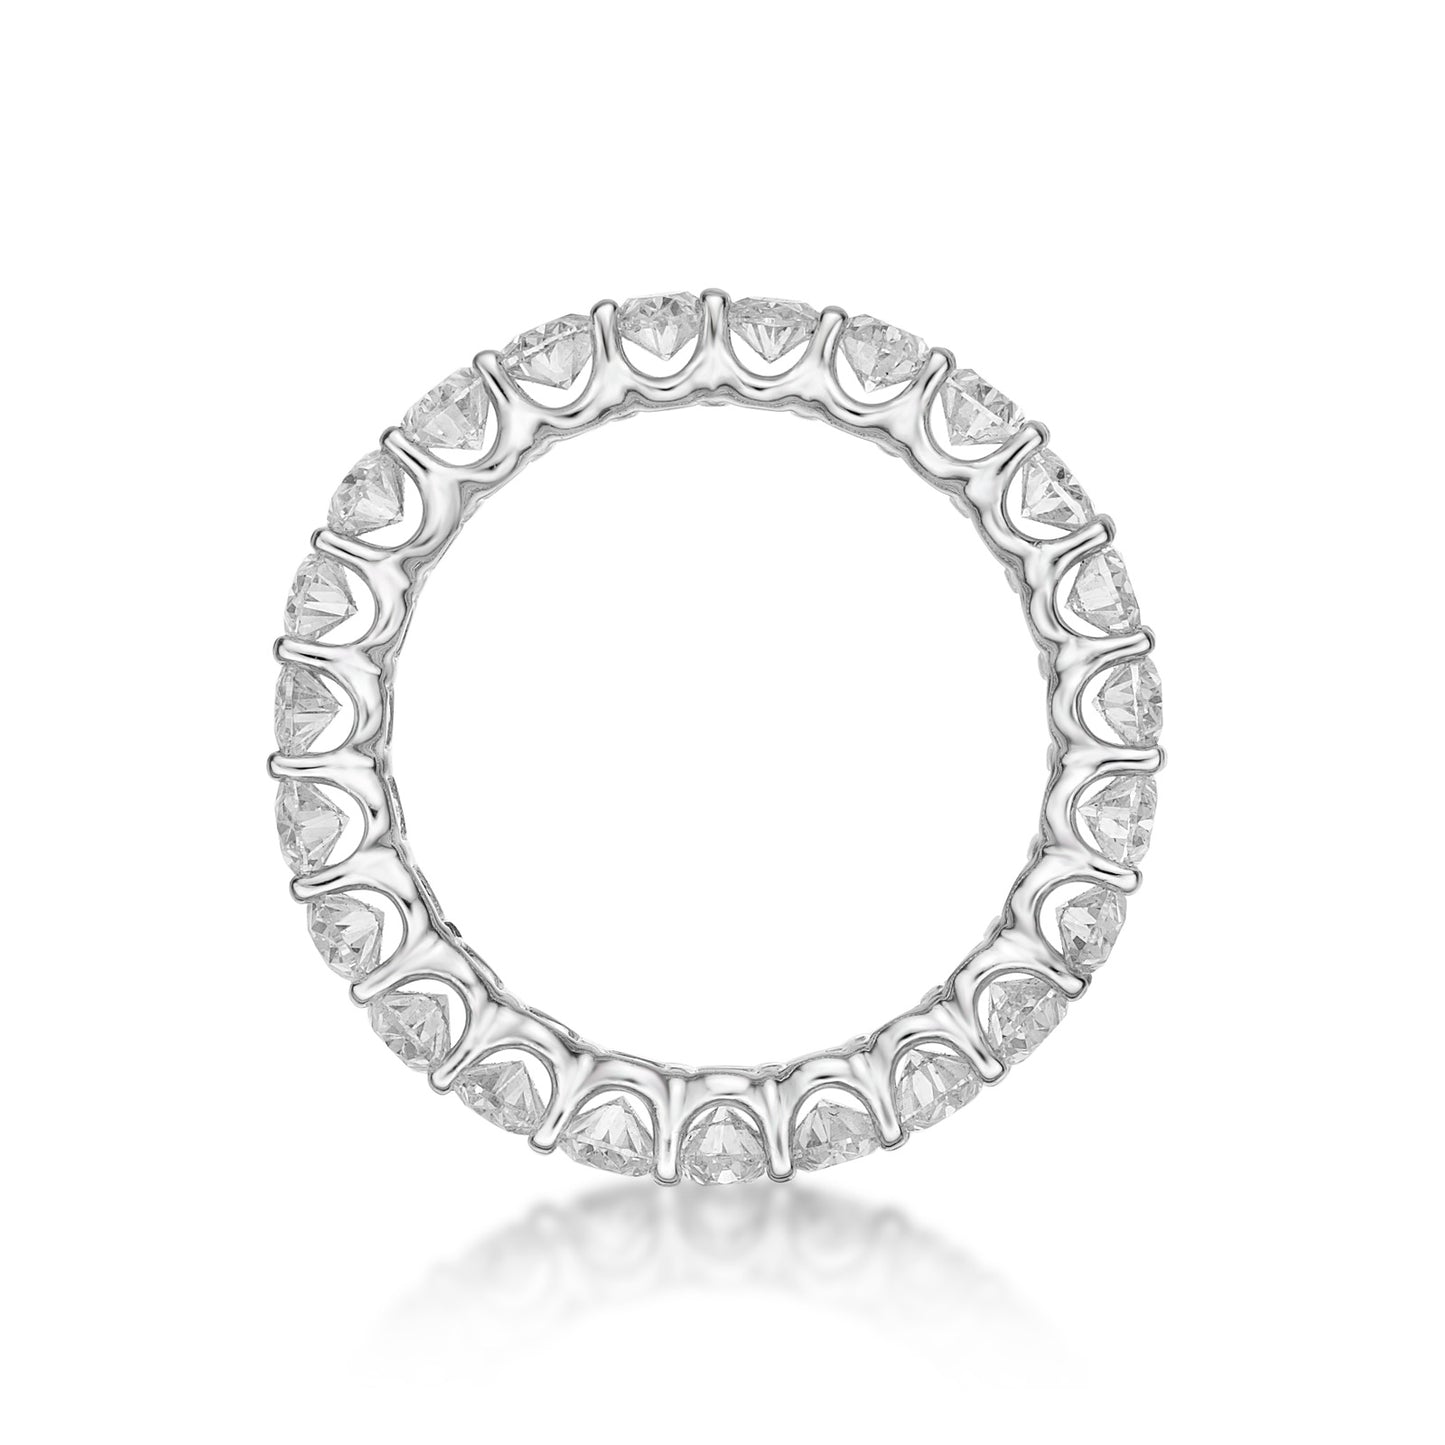 Handmade 18K White Gold 15pt Oval Diamond Eternity Ring